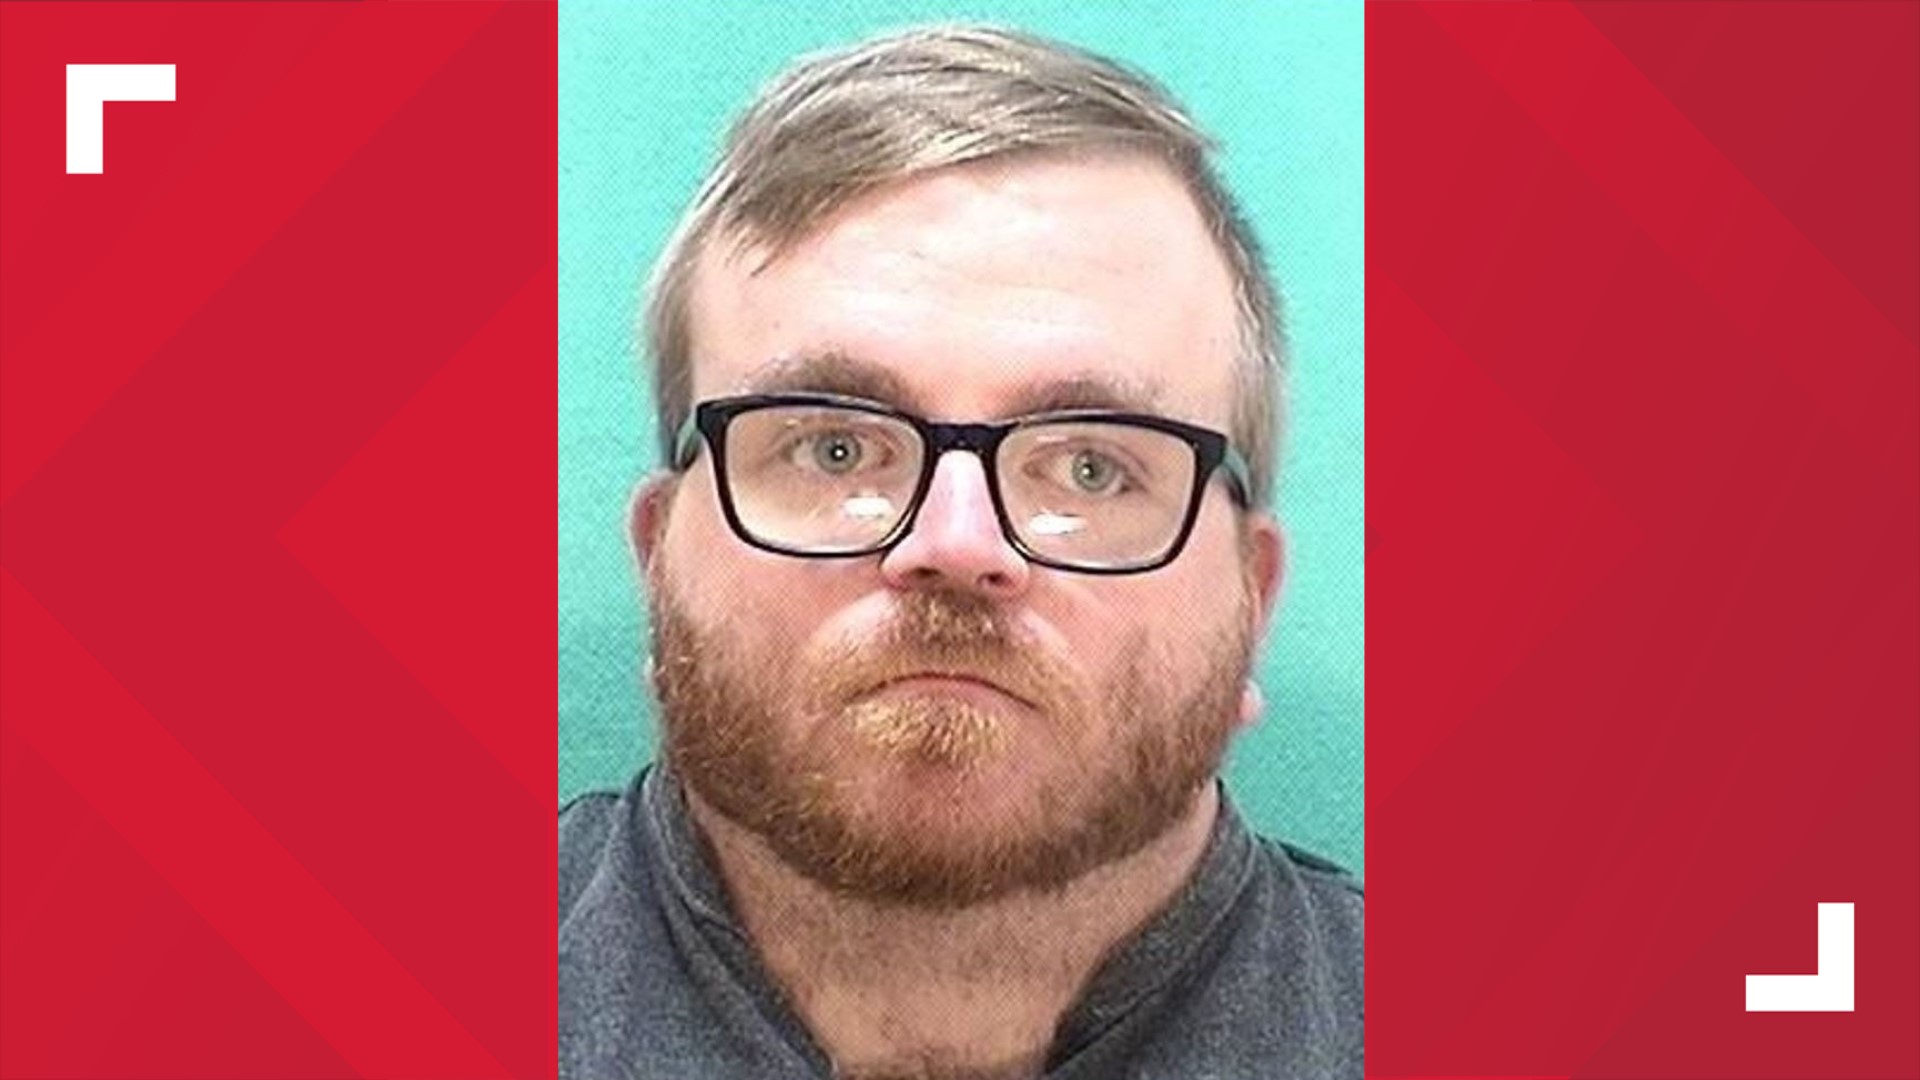 Matthew Reif, 26, was arrested last week.